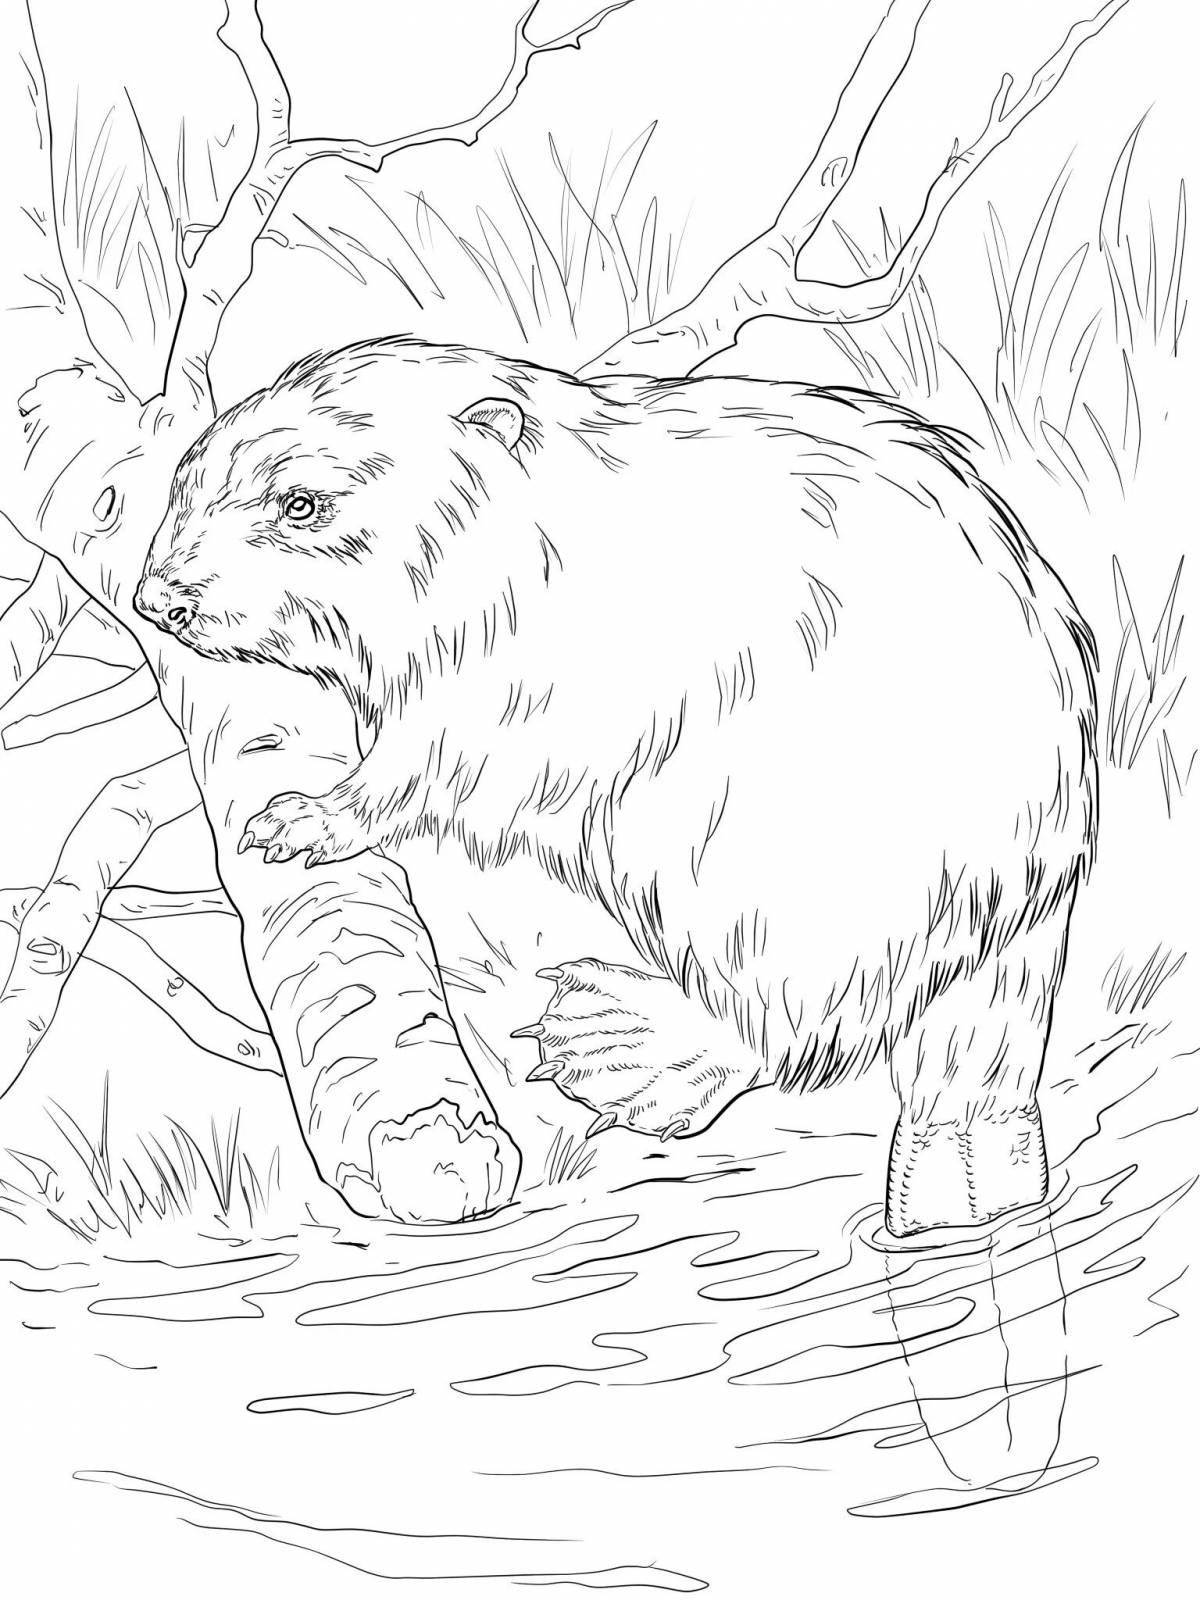 Magic beaver coloring book for kids